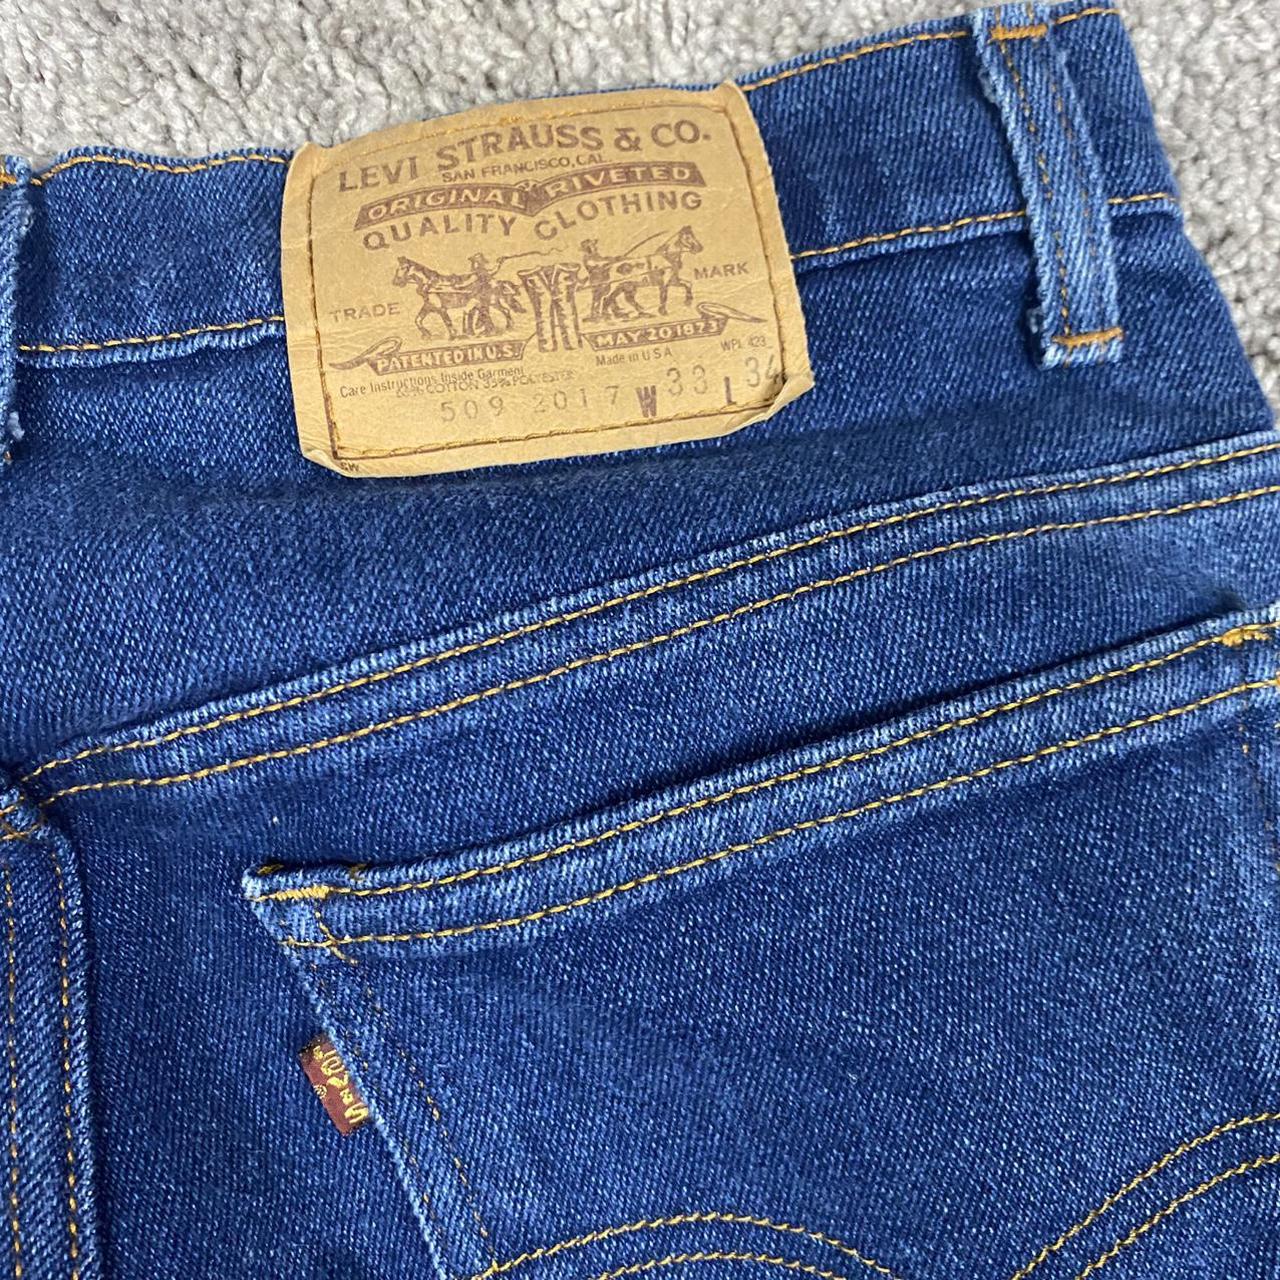 Vintage 1970s levis 509 high waisted jeans. Dark... - Depop